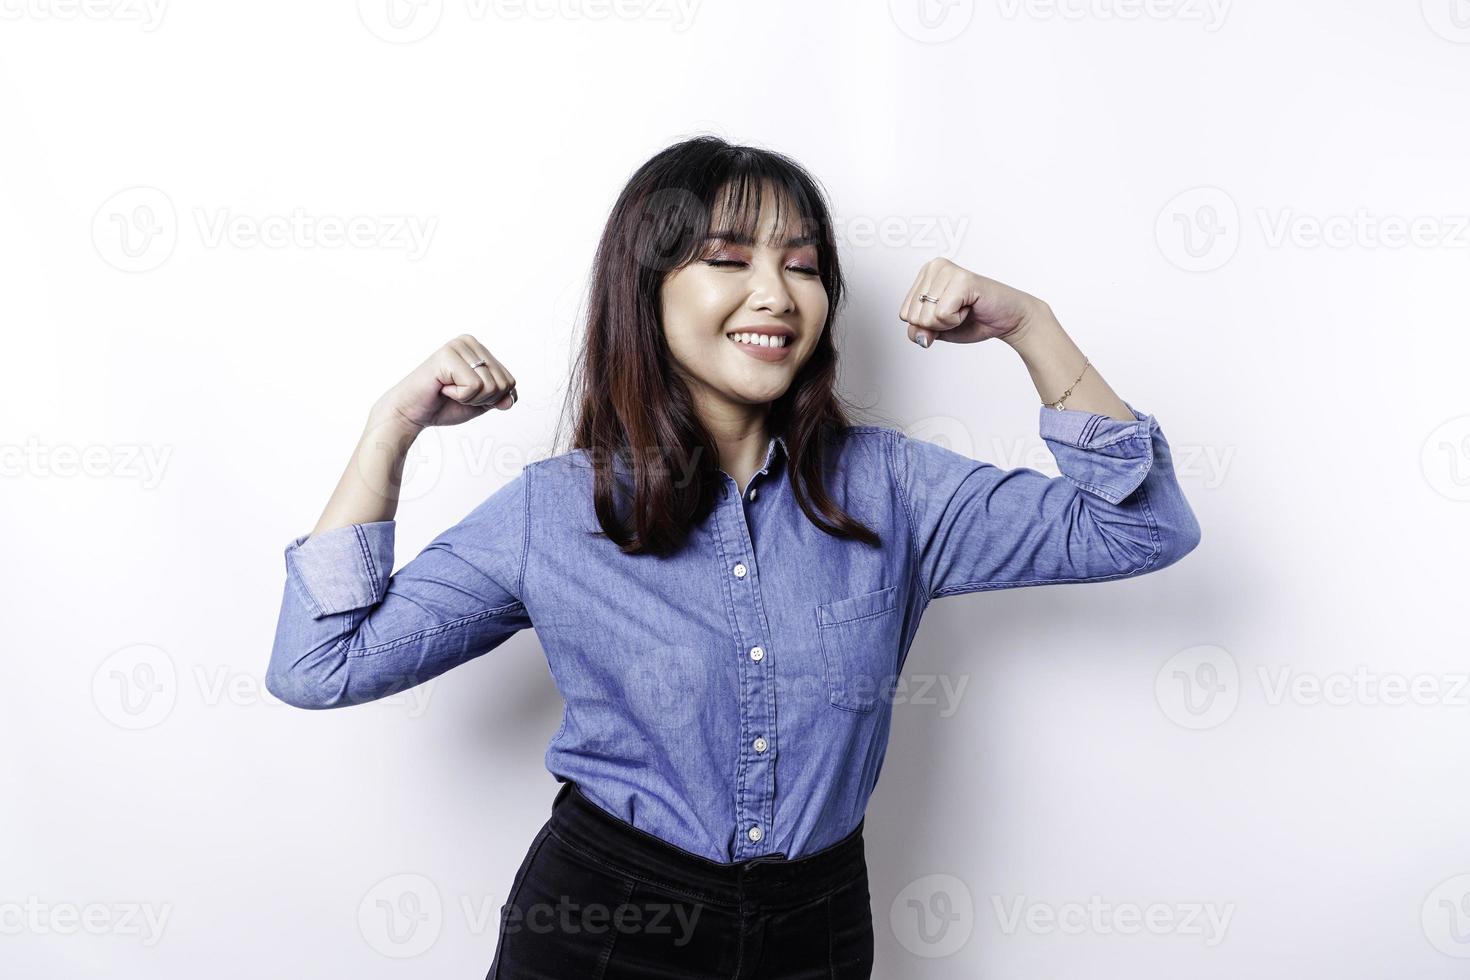 mujer asiática emocionada con una camisa azul que muestra un gesto fuerte levantando los brazos y los músculos sonriendo con orgullo foto